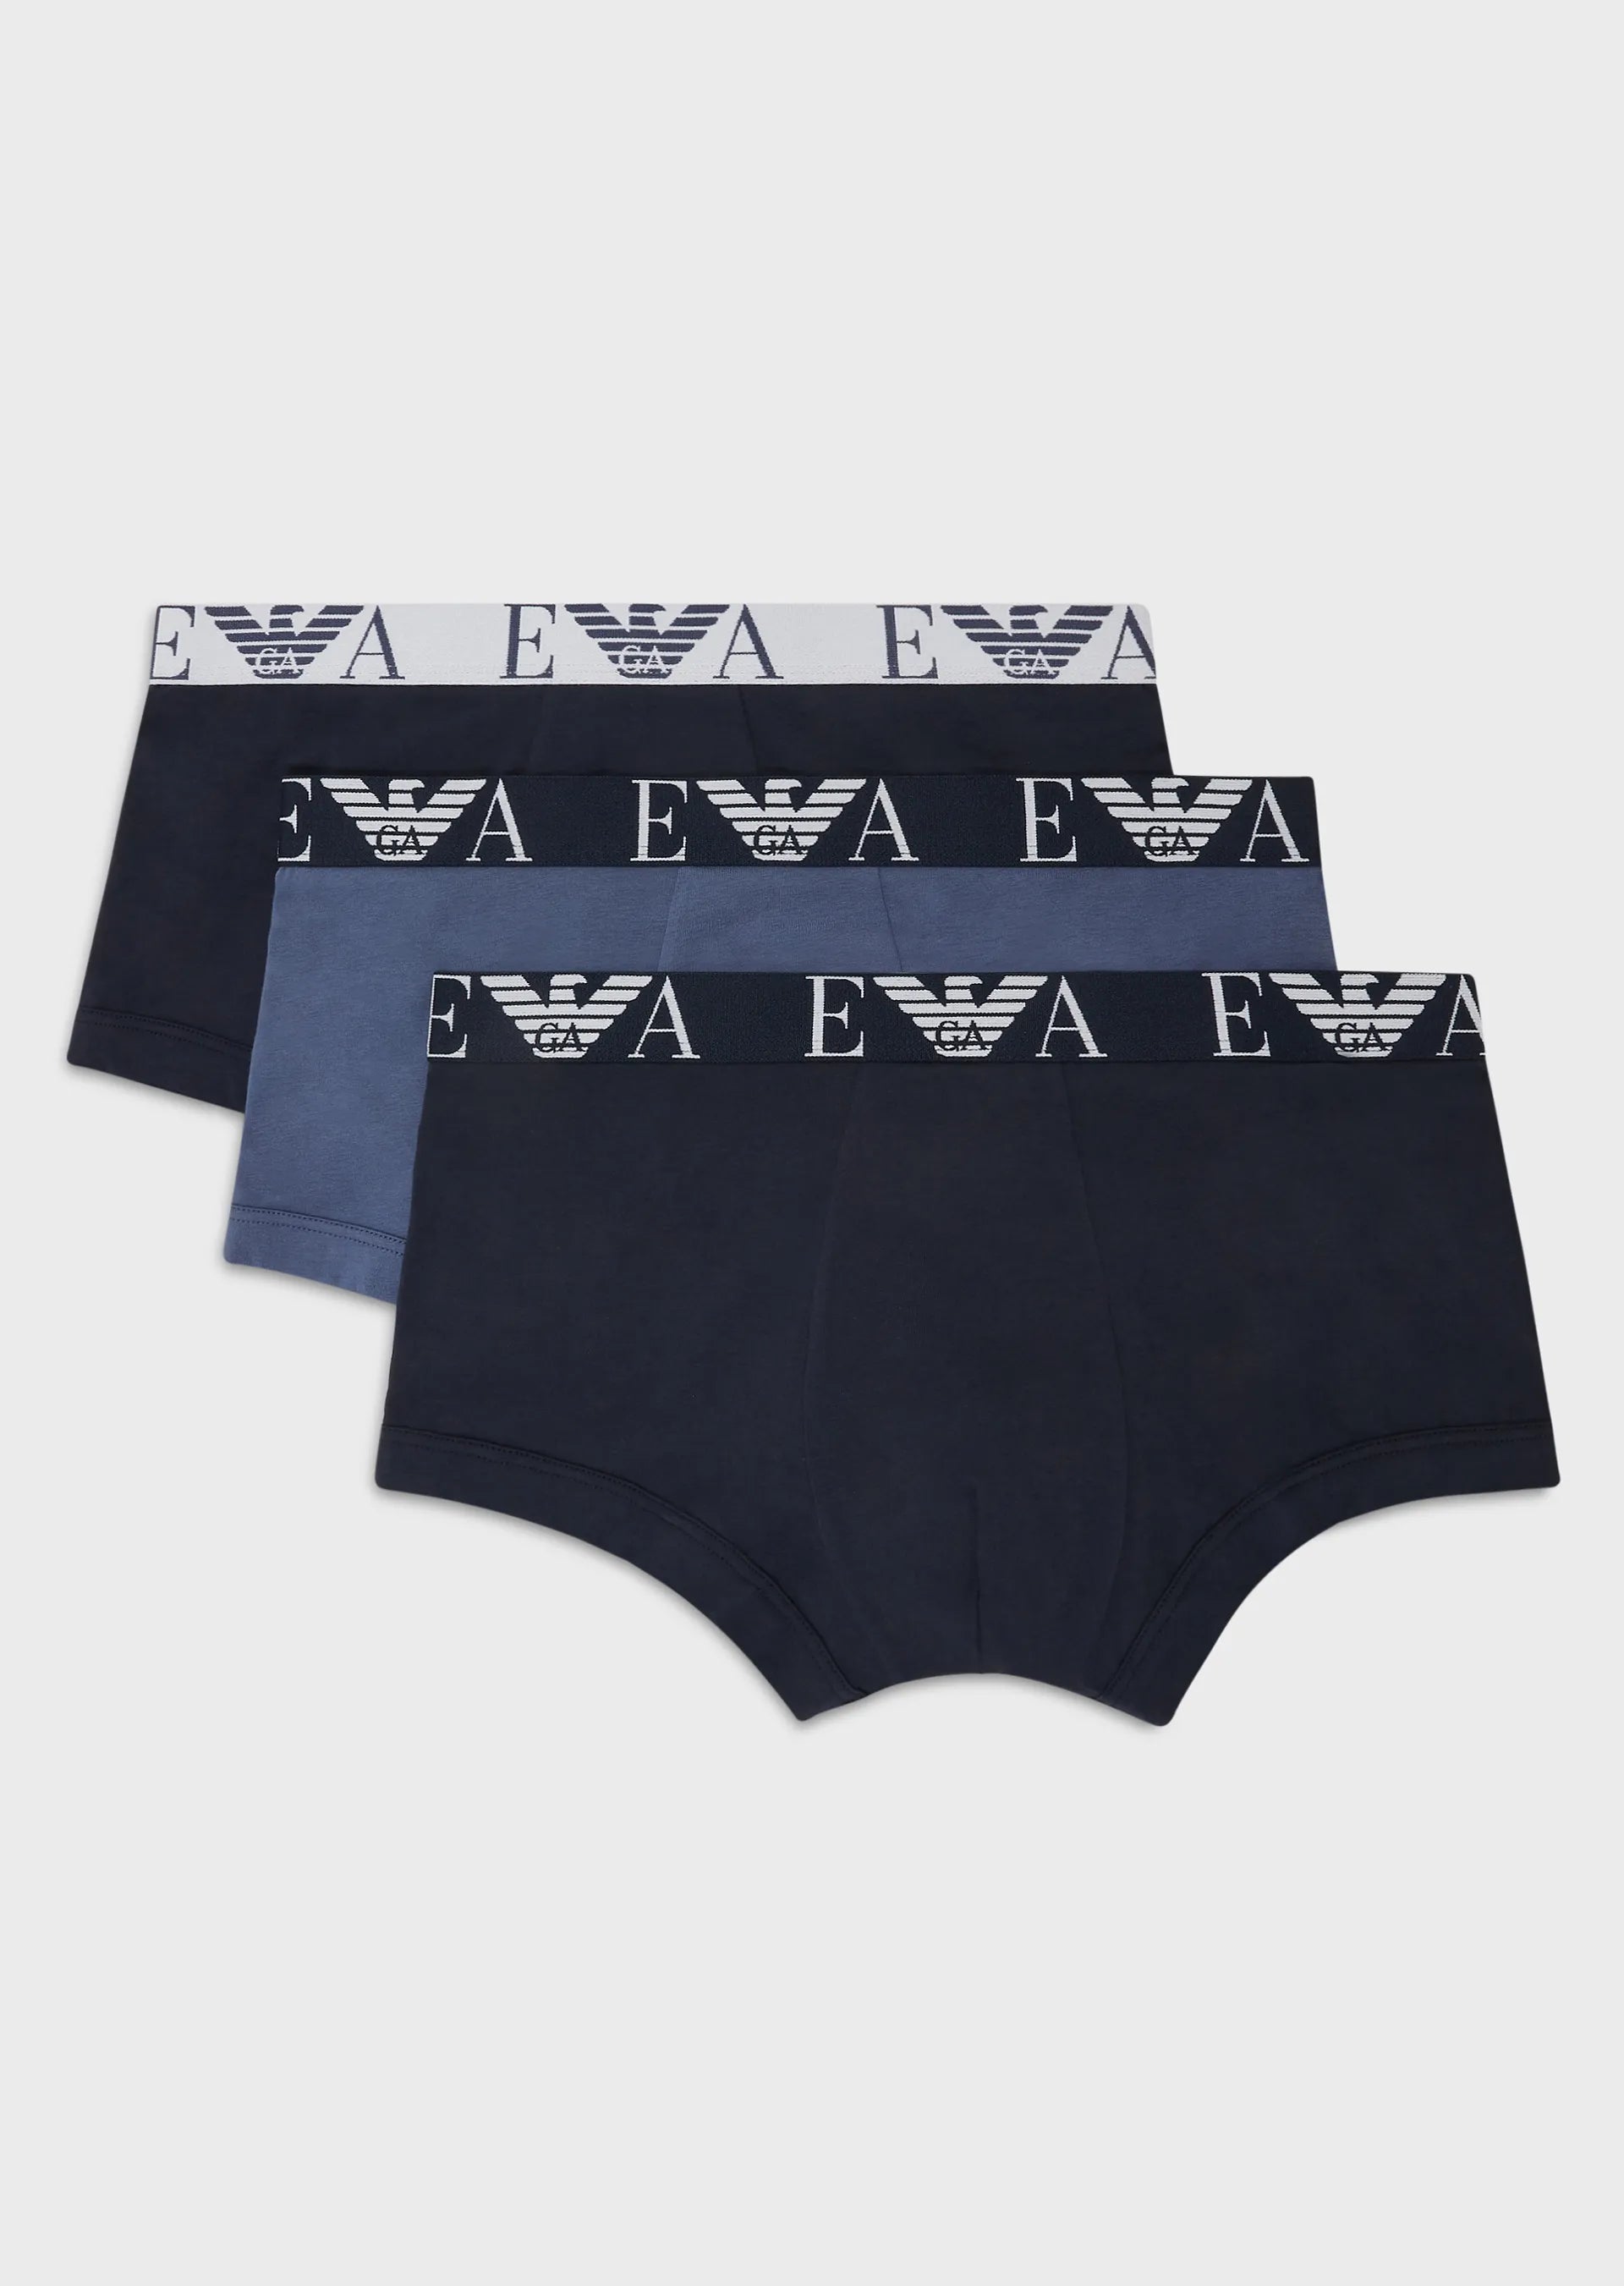 Armani Exchange Men's Underwear UAE